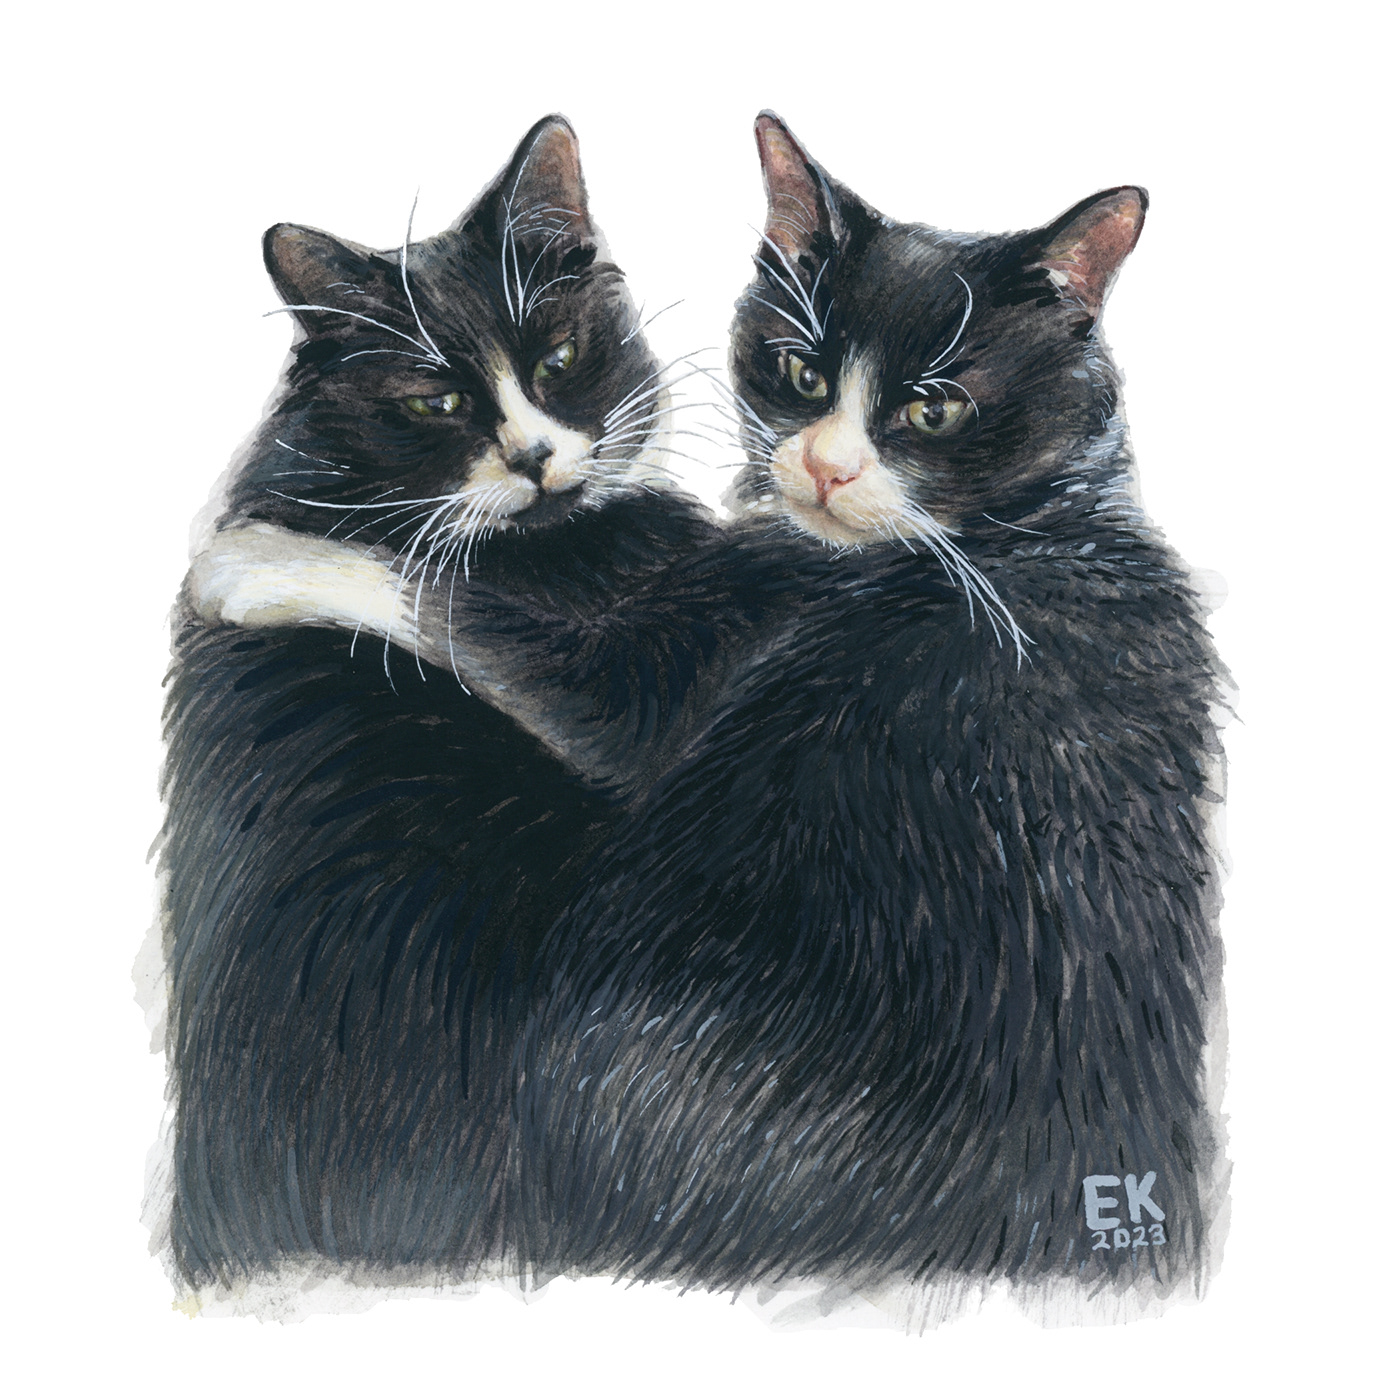 watercolor sketch painting   Cat petportrait black animal portrait